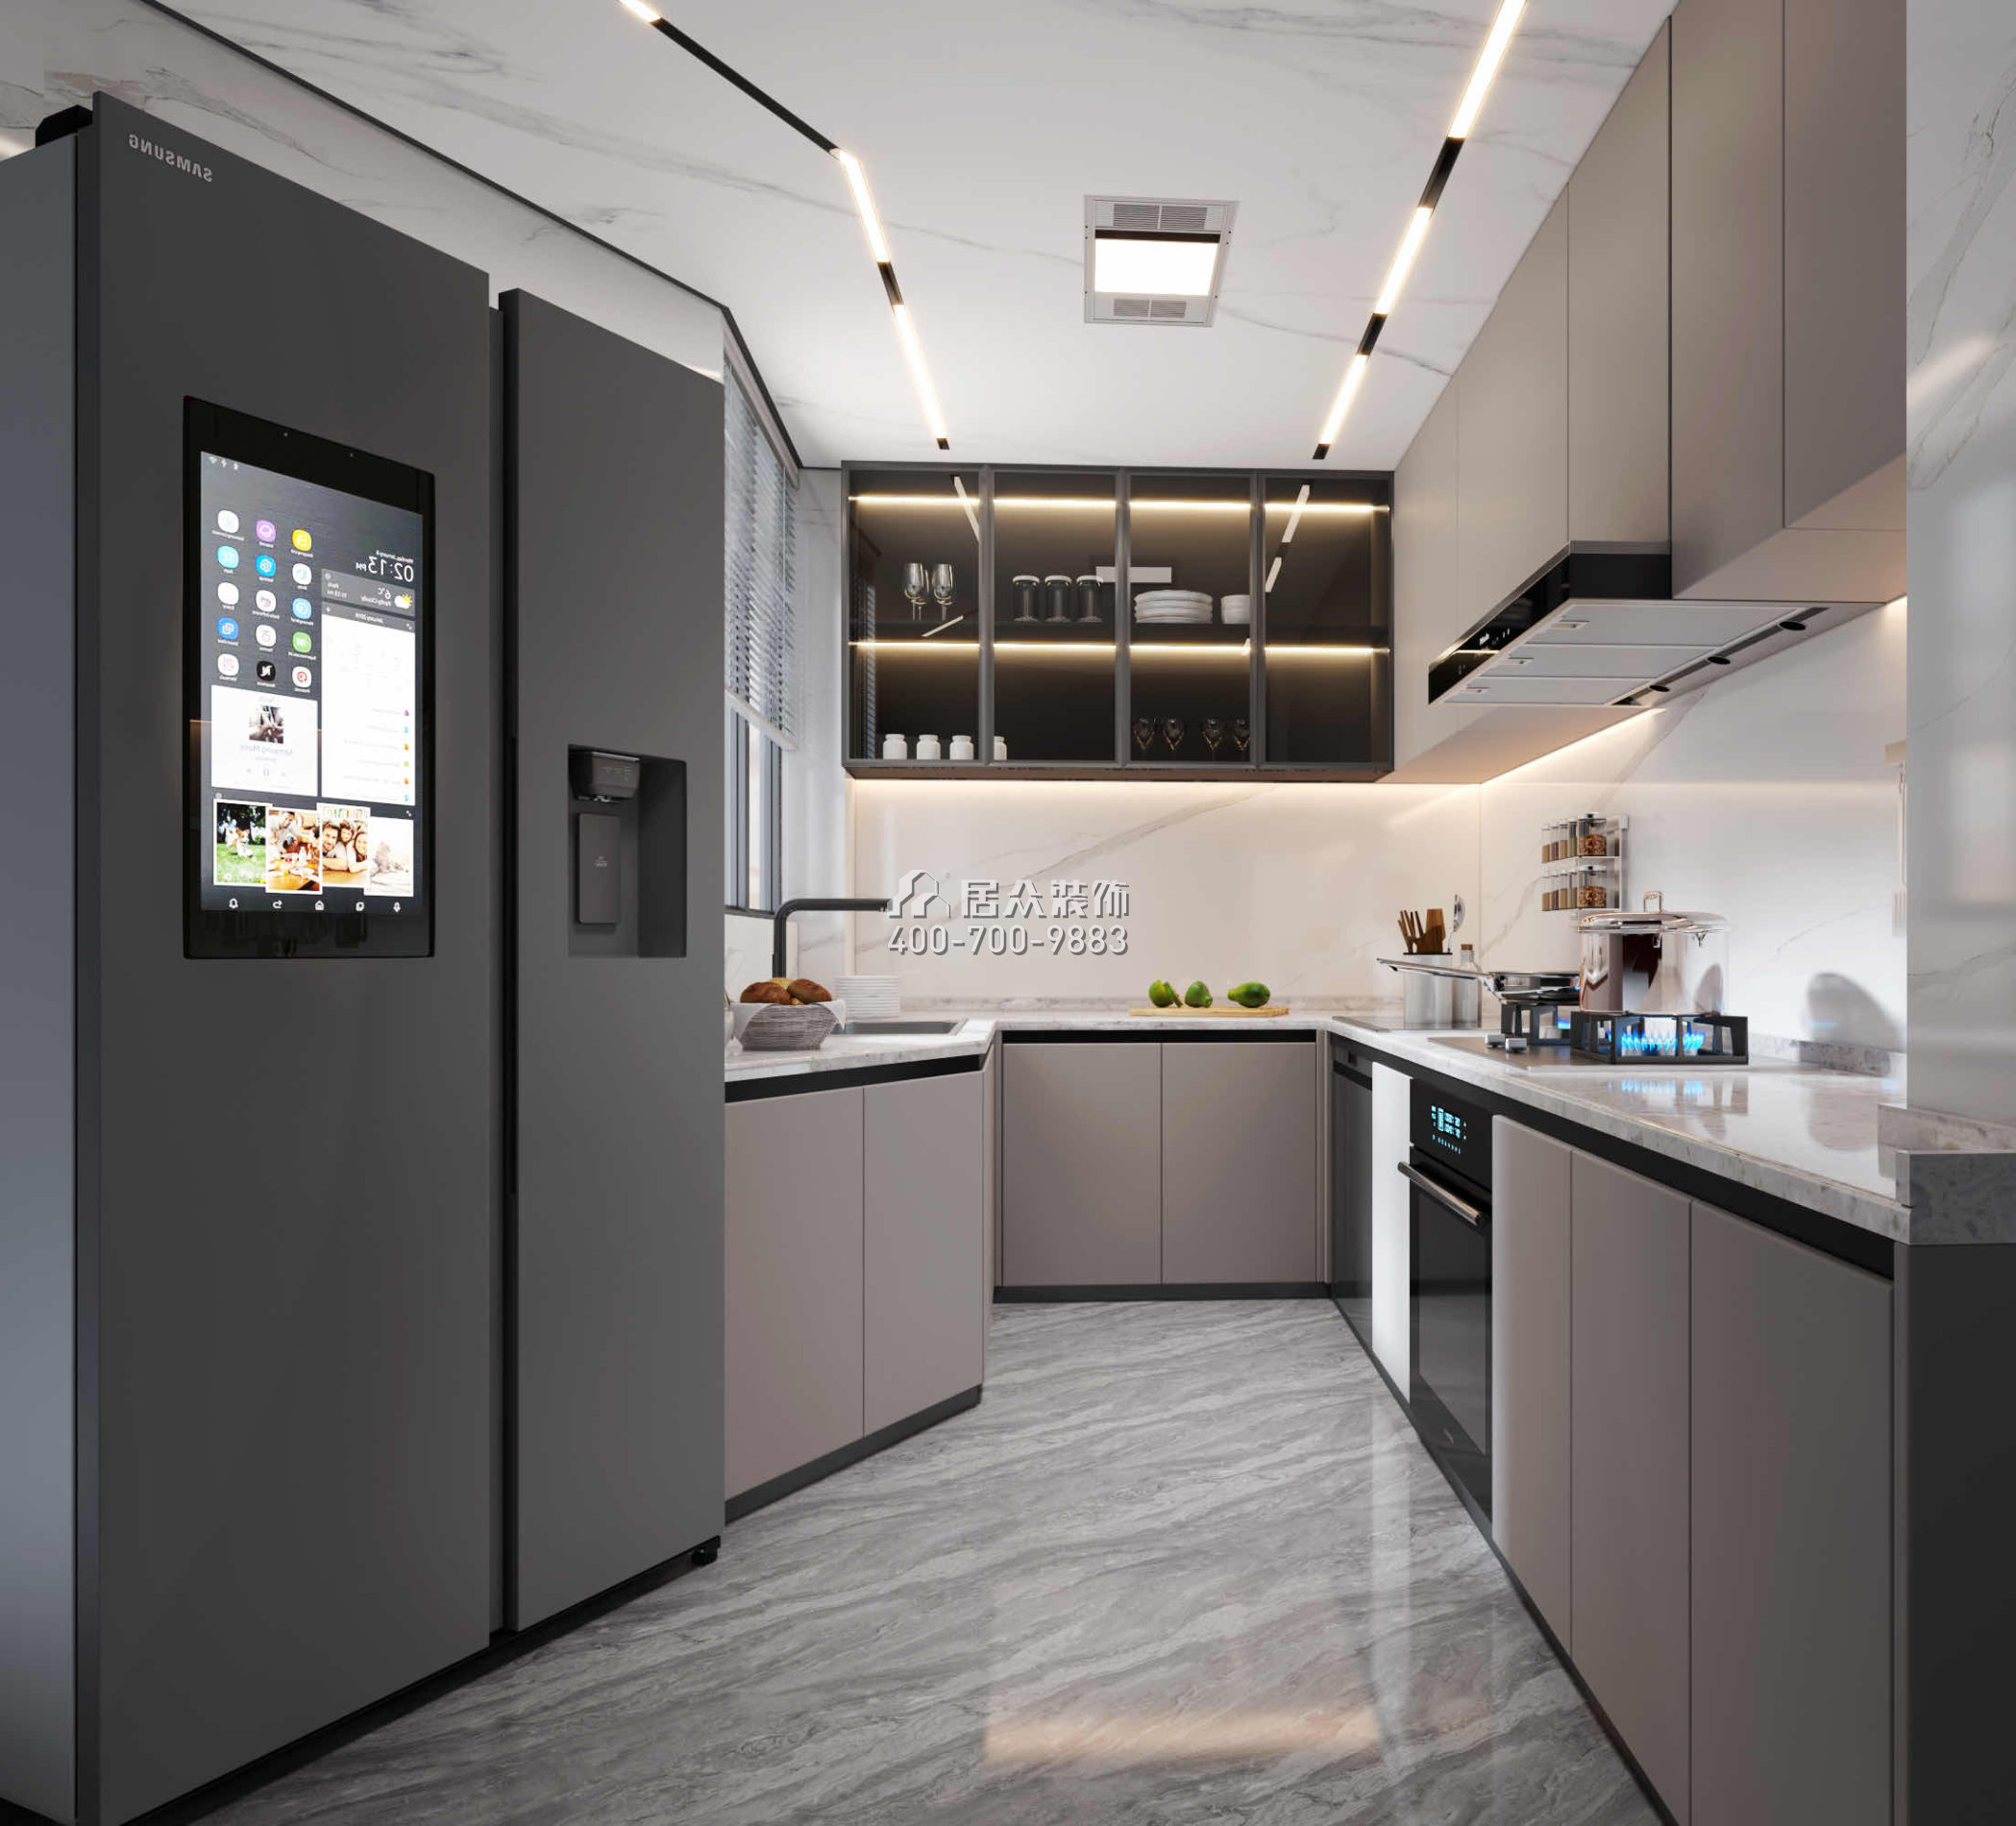 碧海紅樹園120平方米現代簡約風格平層戶型廚房裝修效果圖